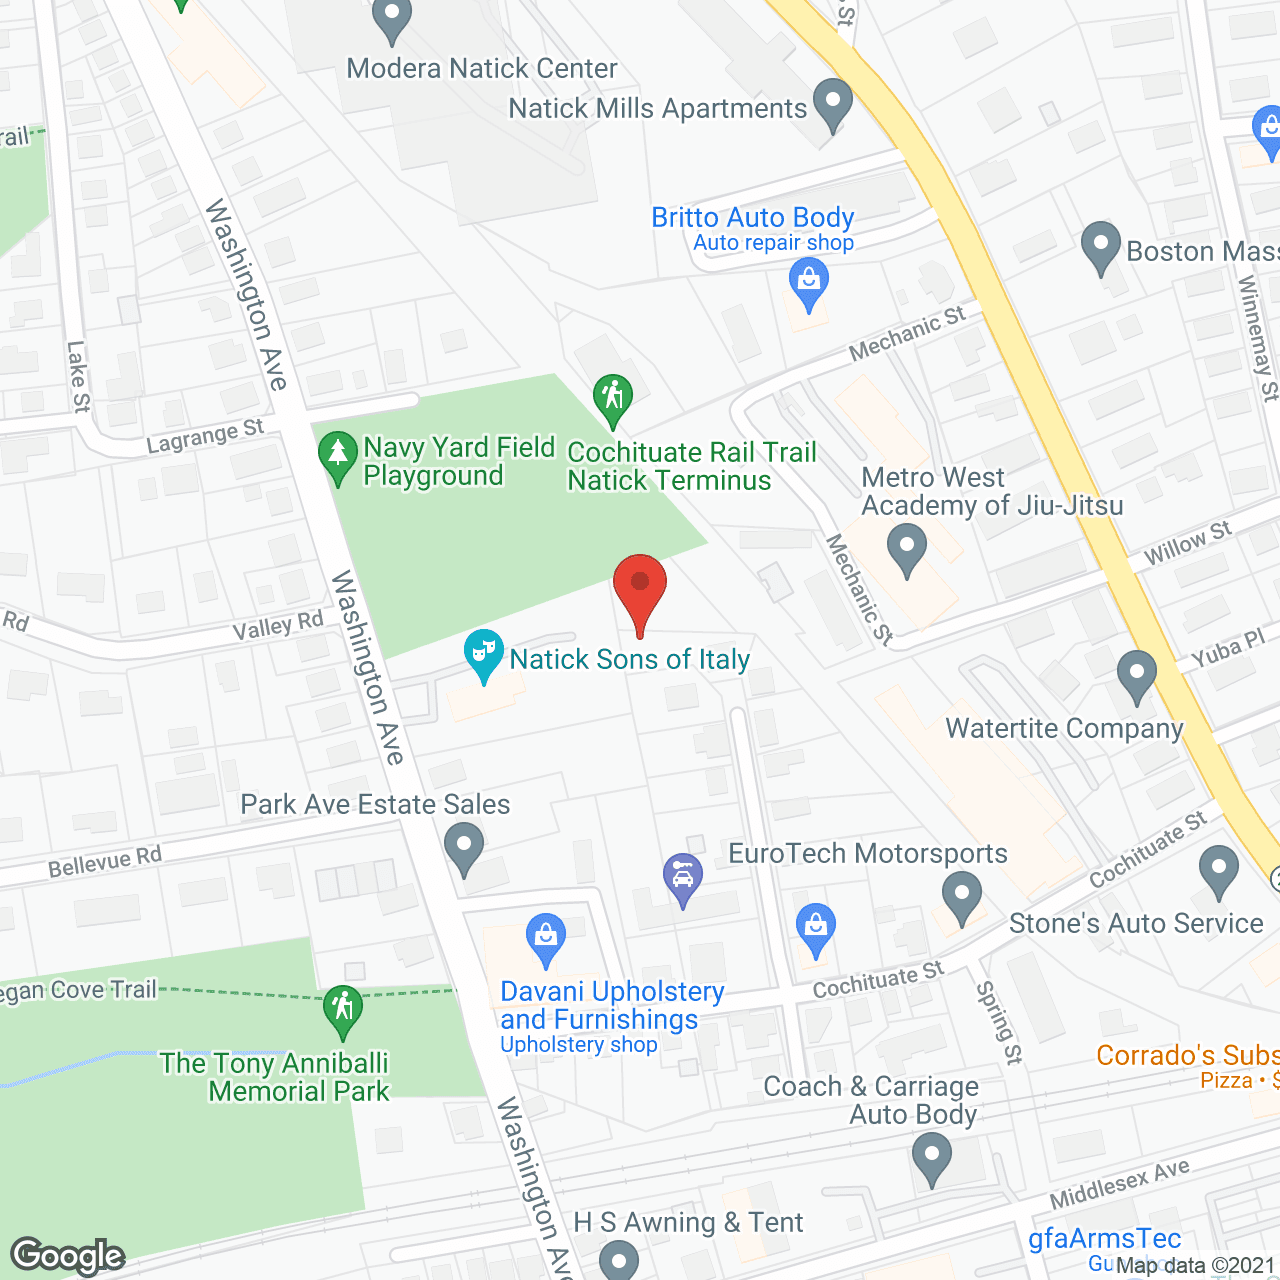 Avenu at Natick in google map